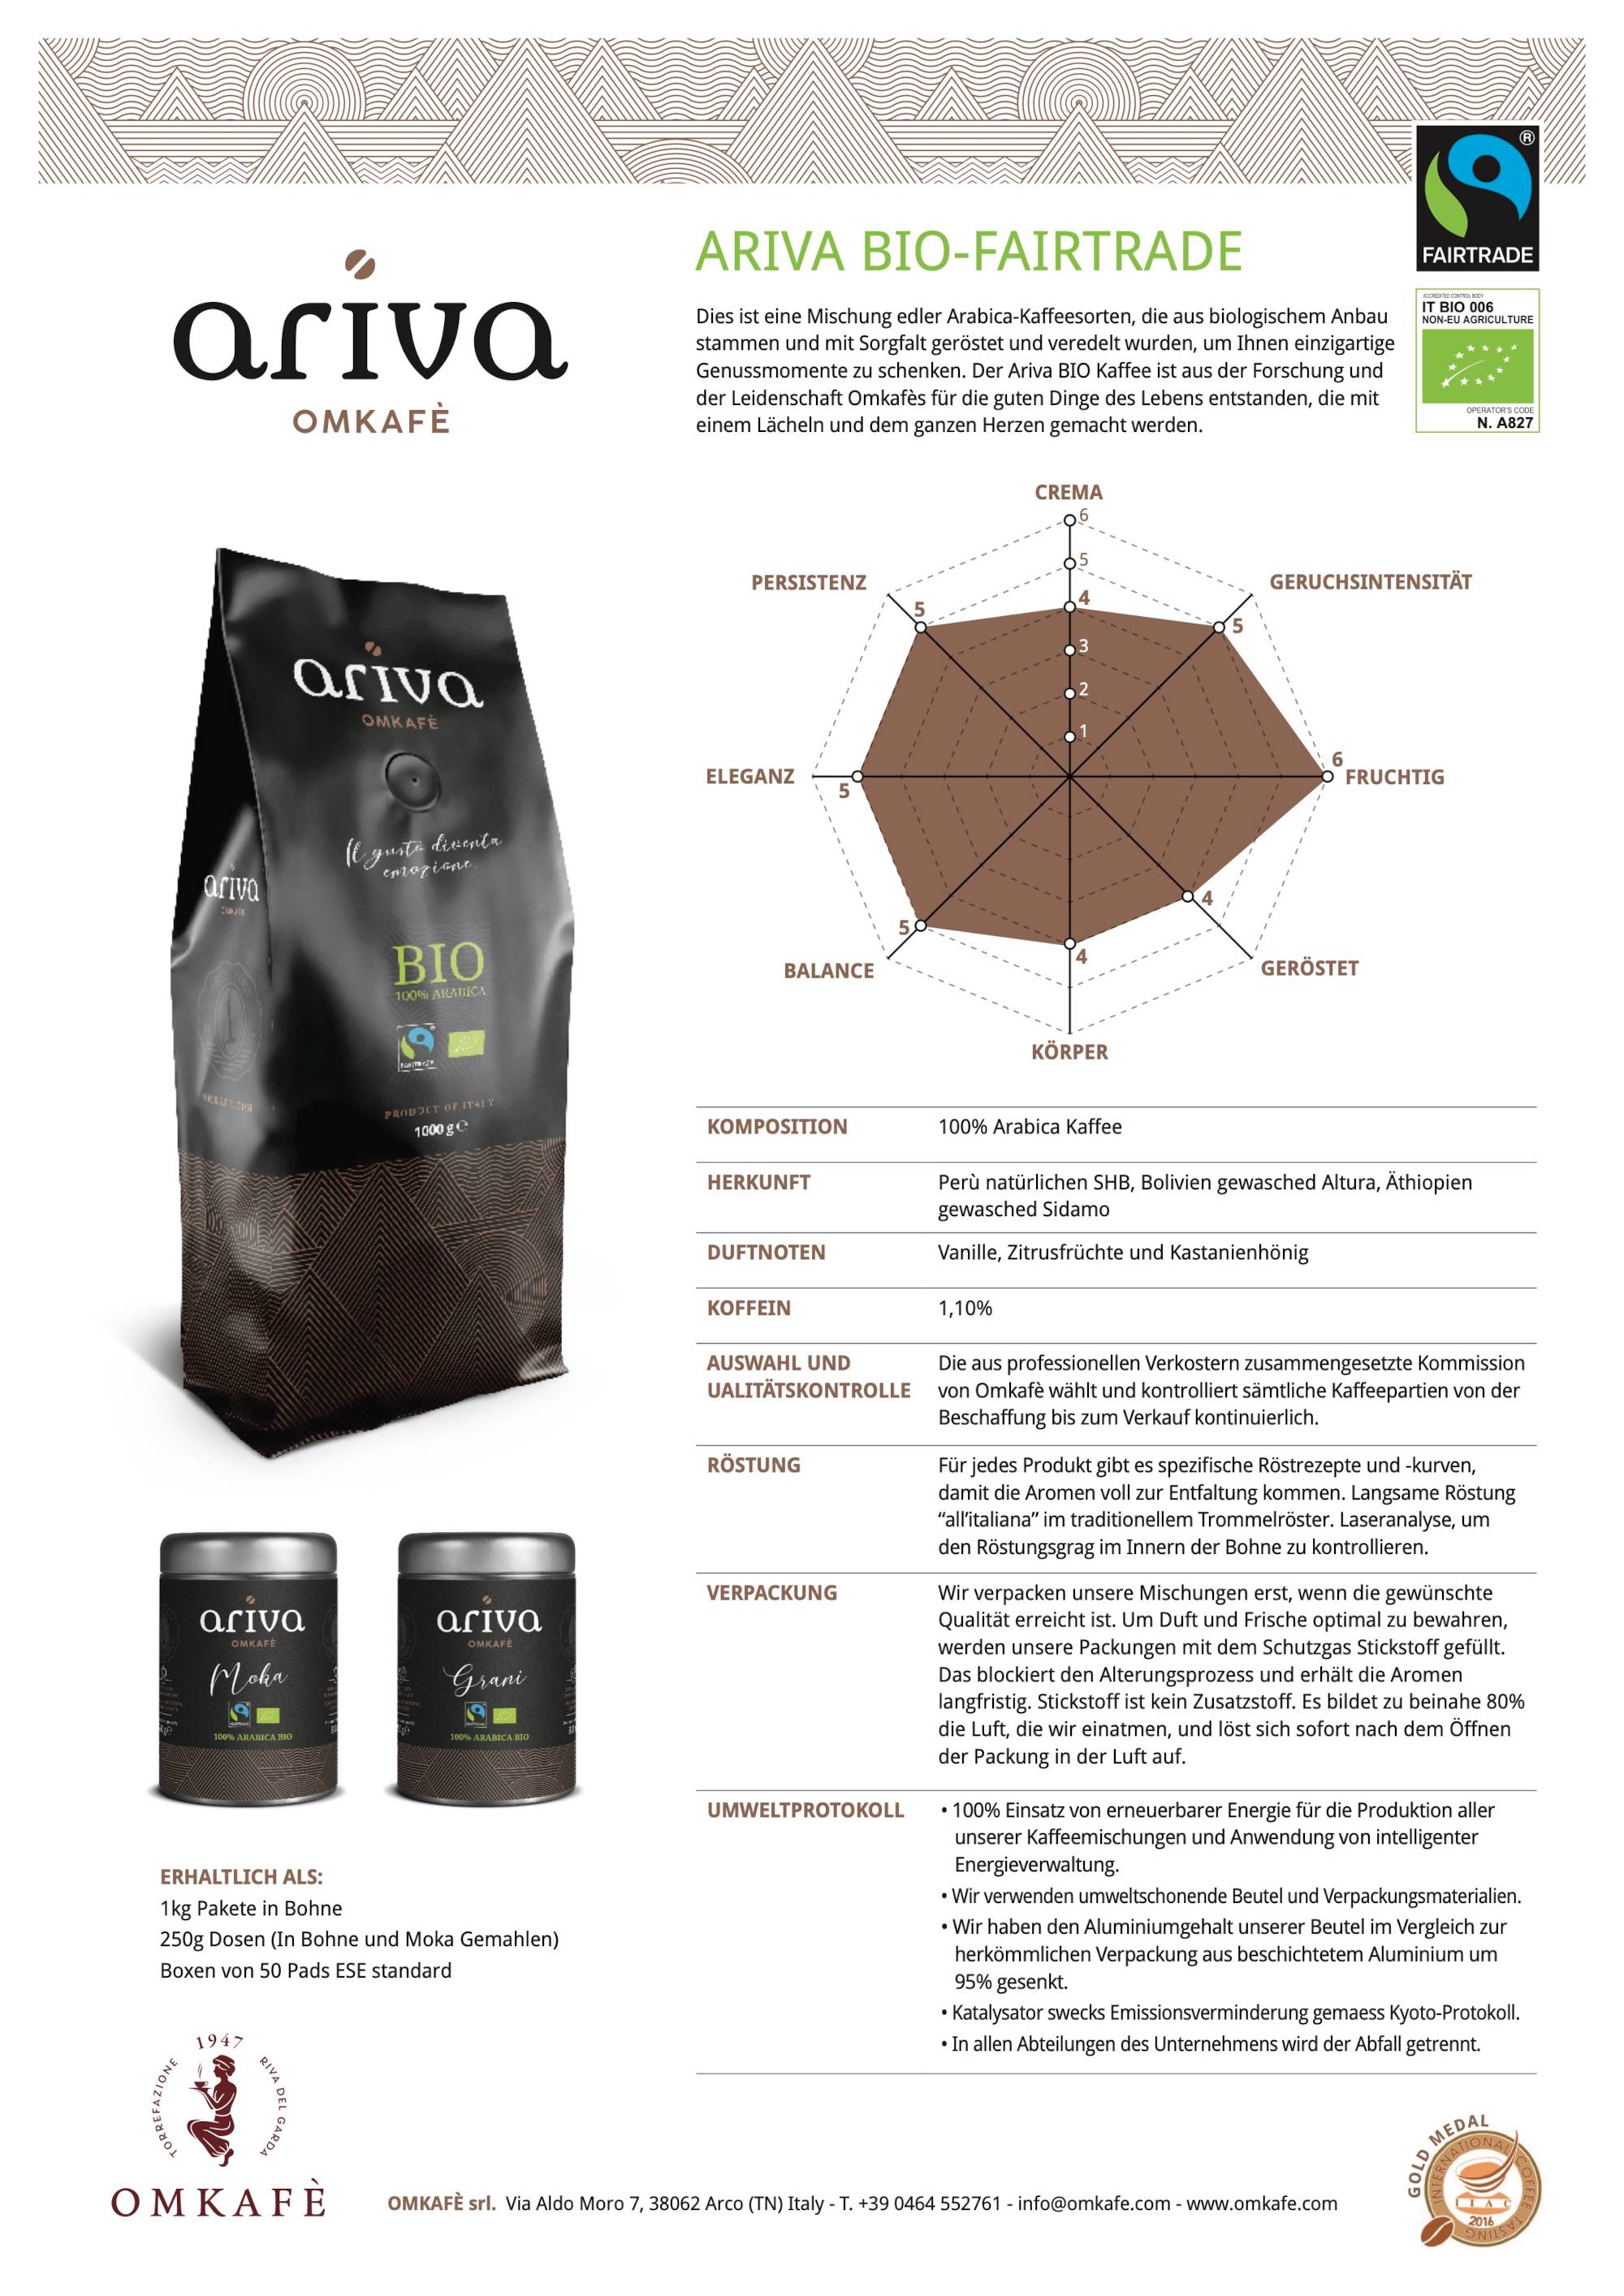 Omkafe Ariva BIO Fairtrade Datenblatt